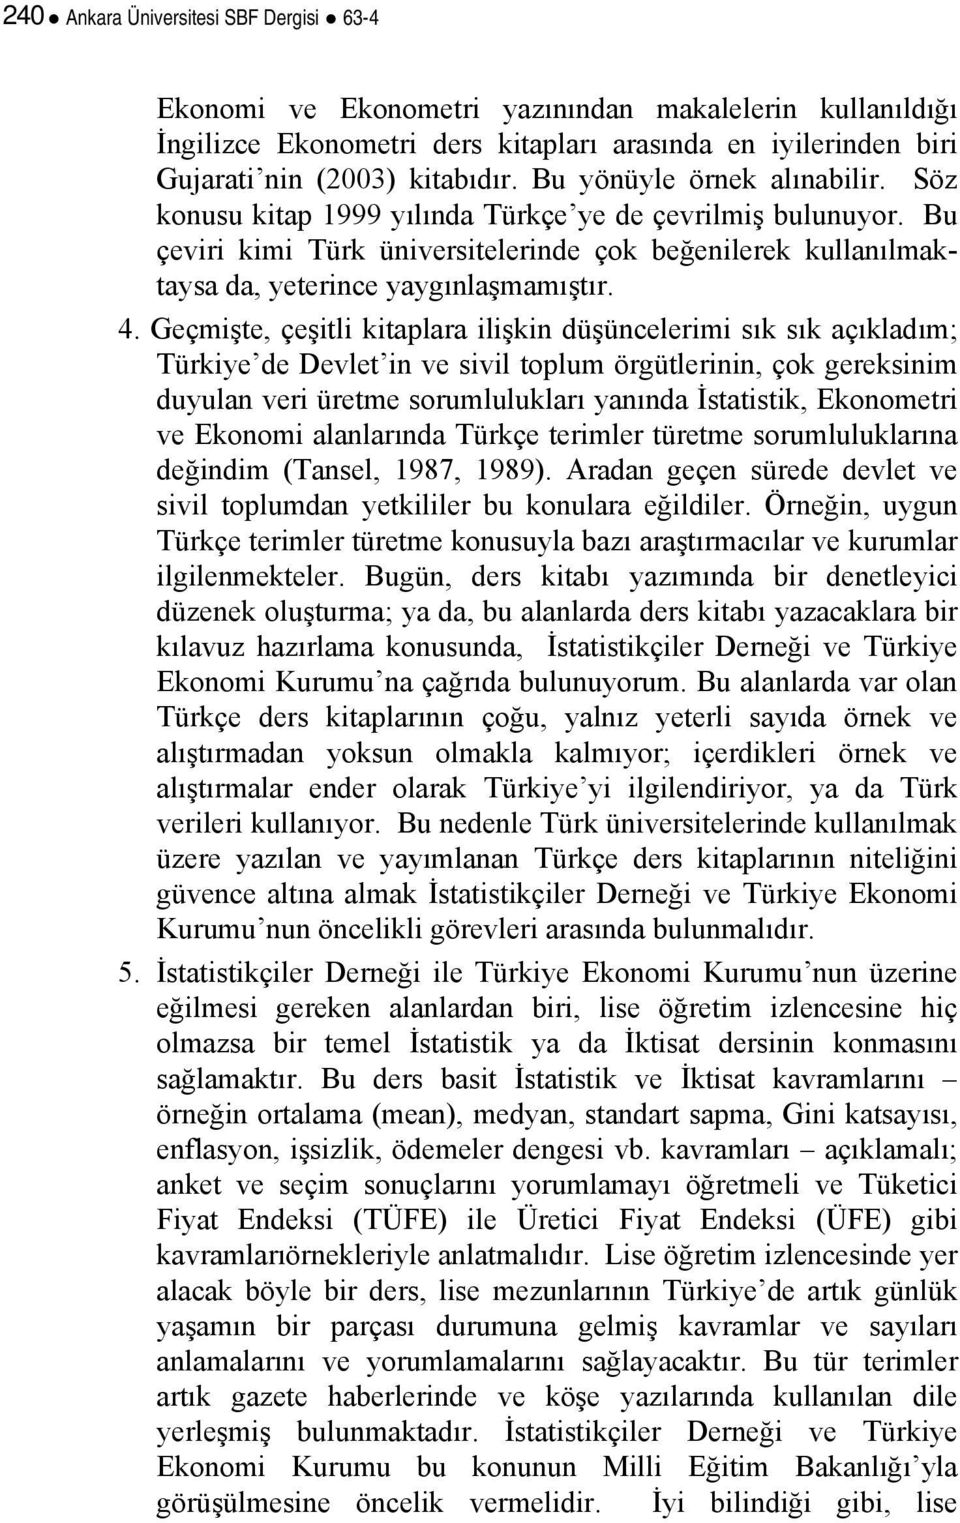 Geçmişte, çeşitli kitaplara ilişkin düşüncelerimi sık sık açıkladım; Türkiye de Devlet in ve sivil toplum örgütlerinin, çok gereksinim duyulan veri üretme sorumlulukları yanında İstatistik,